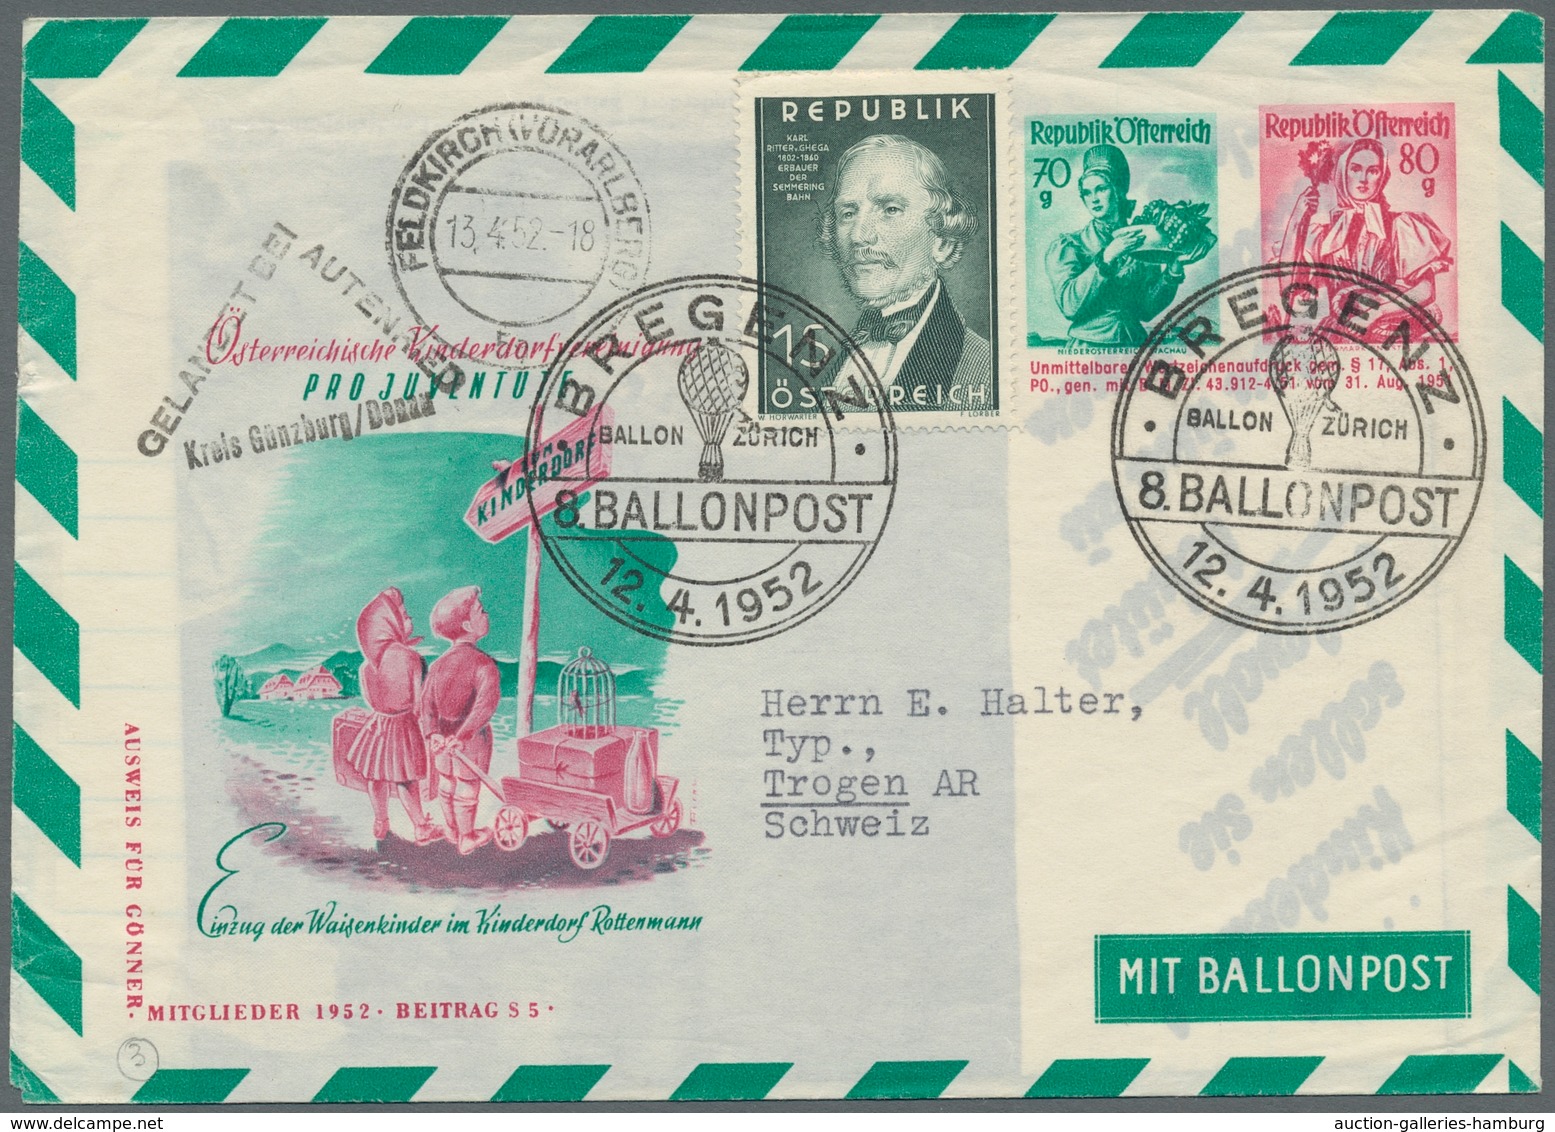 Ballonpost: 1949-1961, Partie Von 8 Ballonpostbelegen, Darunter Einer Vom Saarland, Drei Von Der Biz - Montgolfier